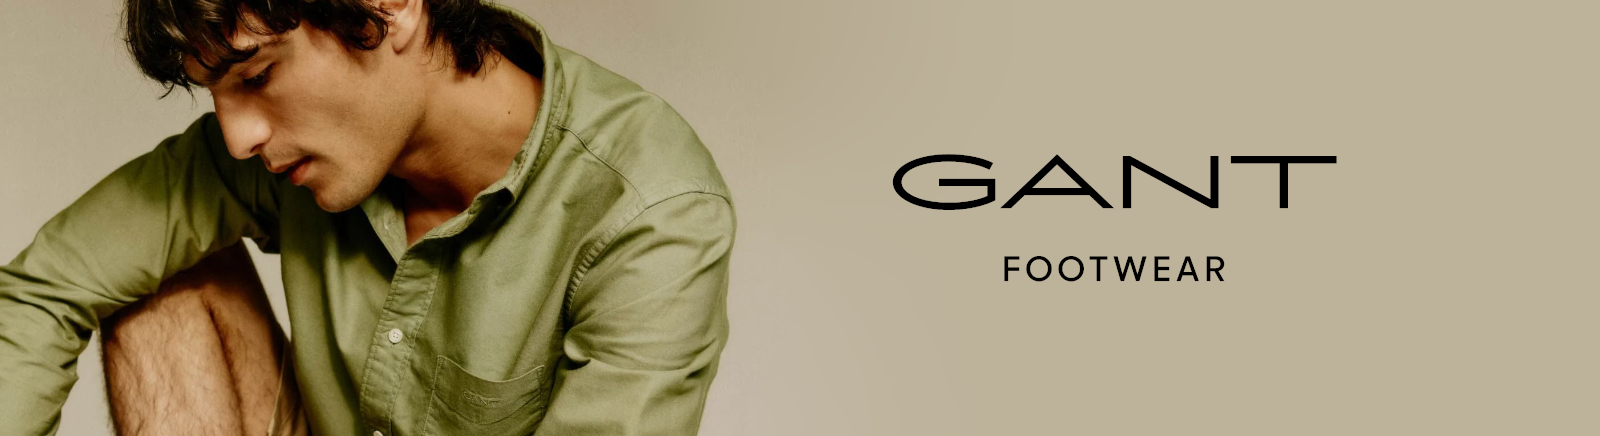 Prange: Gant Winter Boots für Damen online shoppen